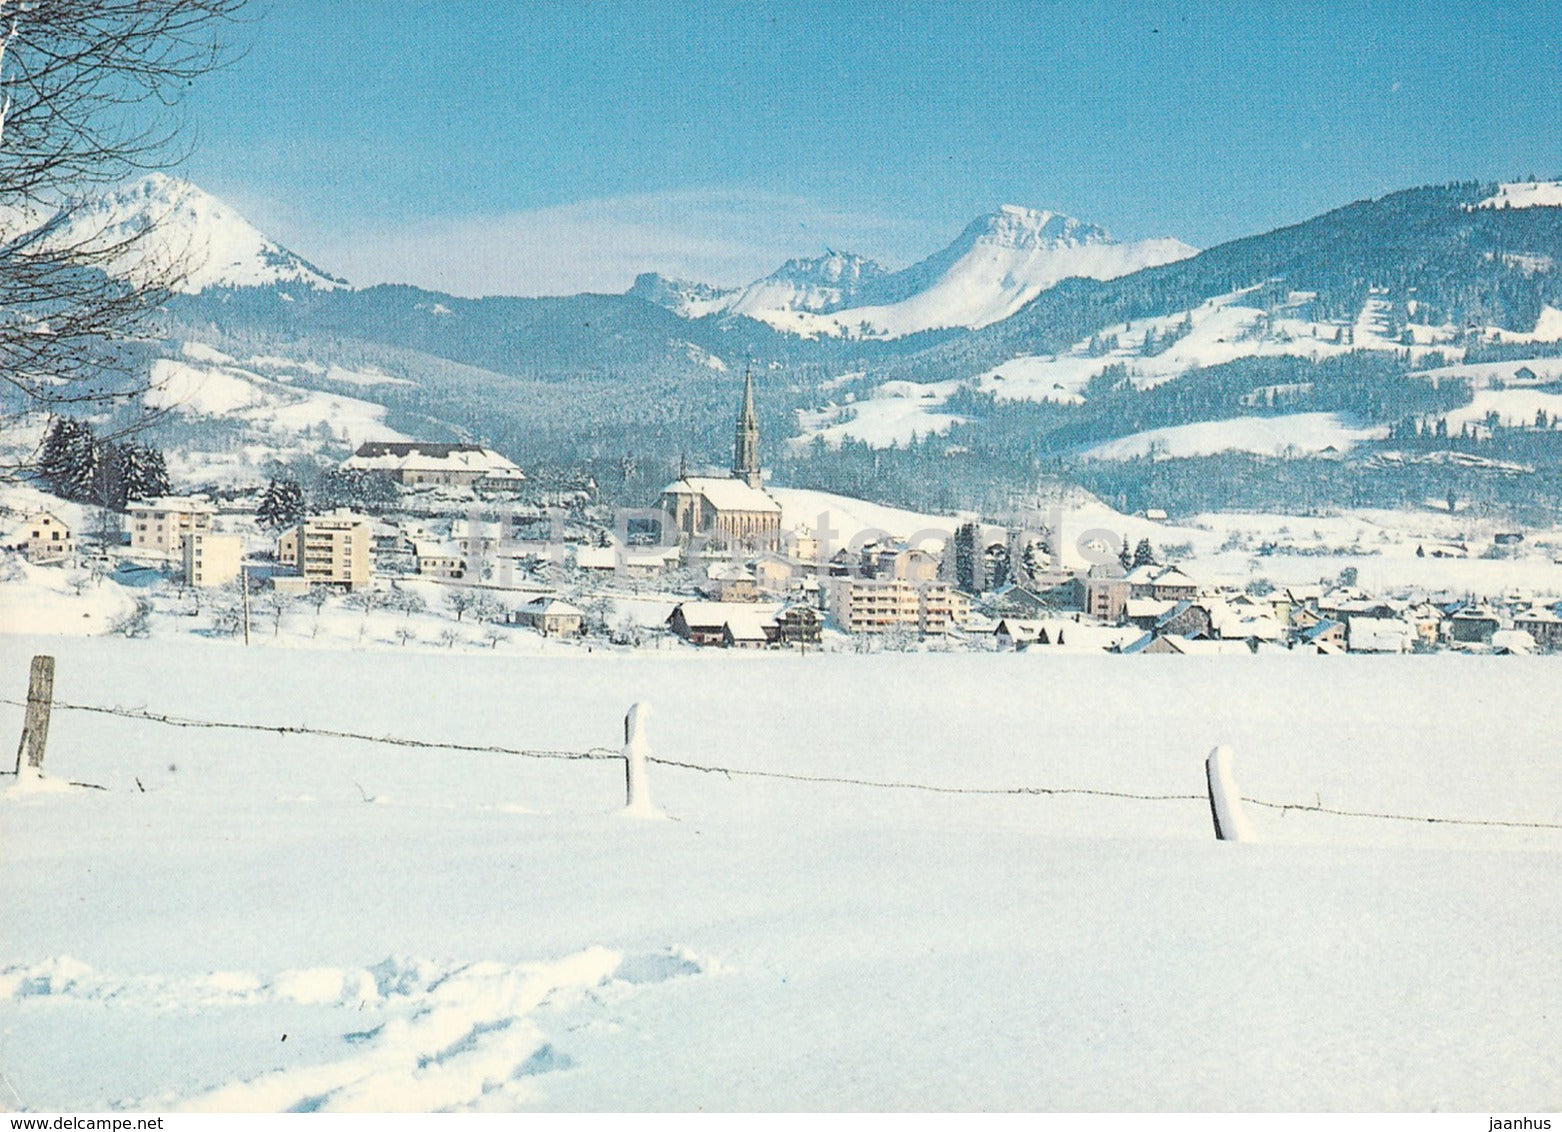 Chatel St Denis avec Teysachaux et Dent de Lys - 1967 - Switzerland - used - JH Postcards